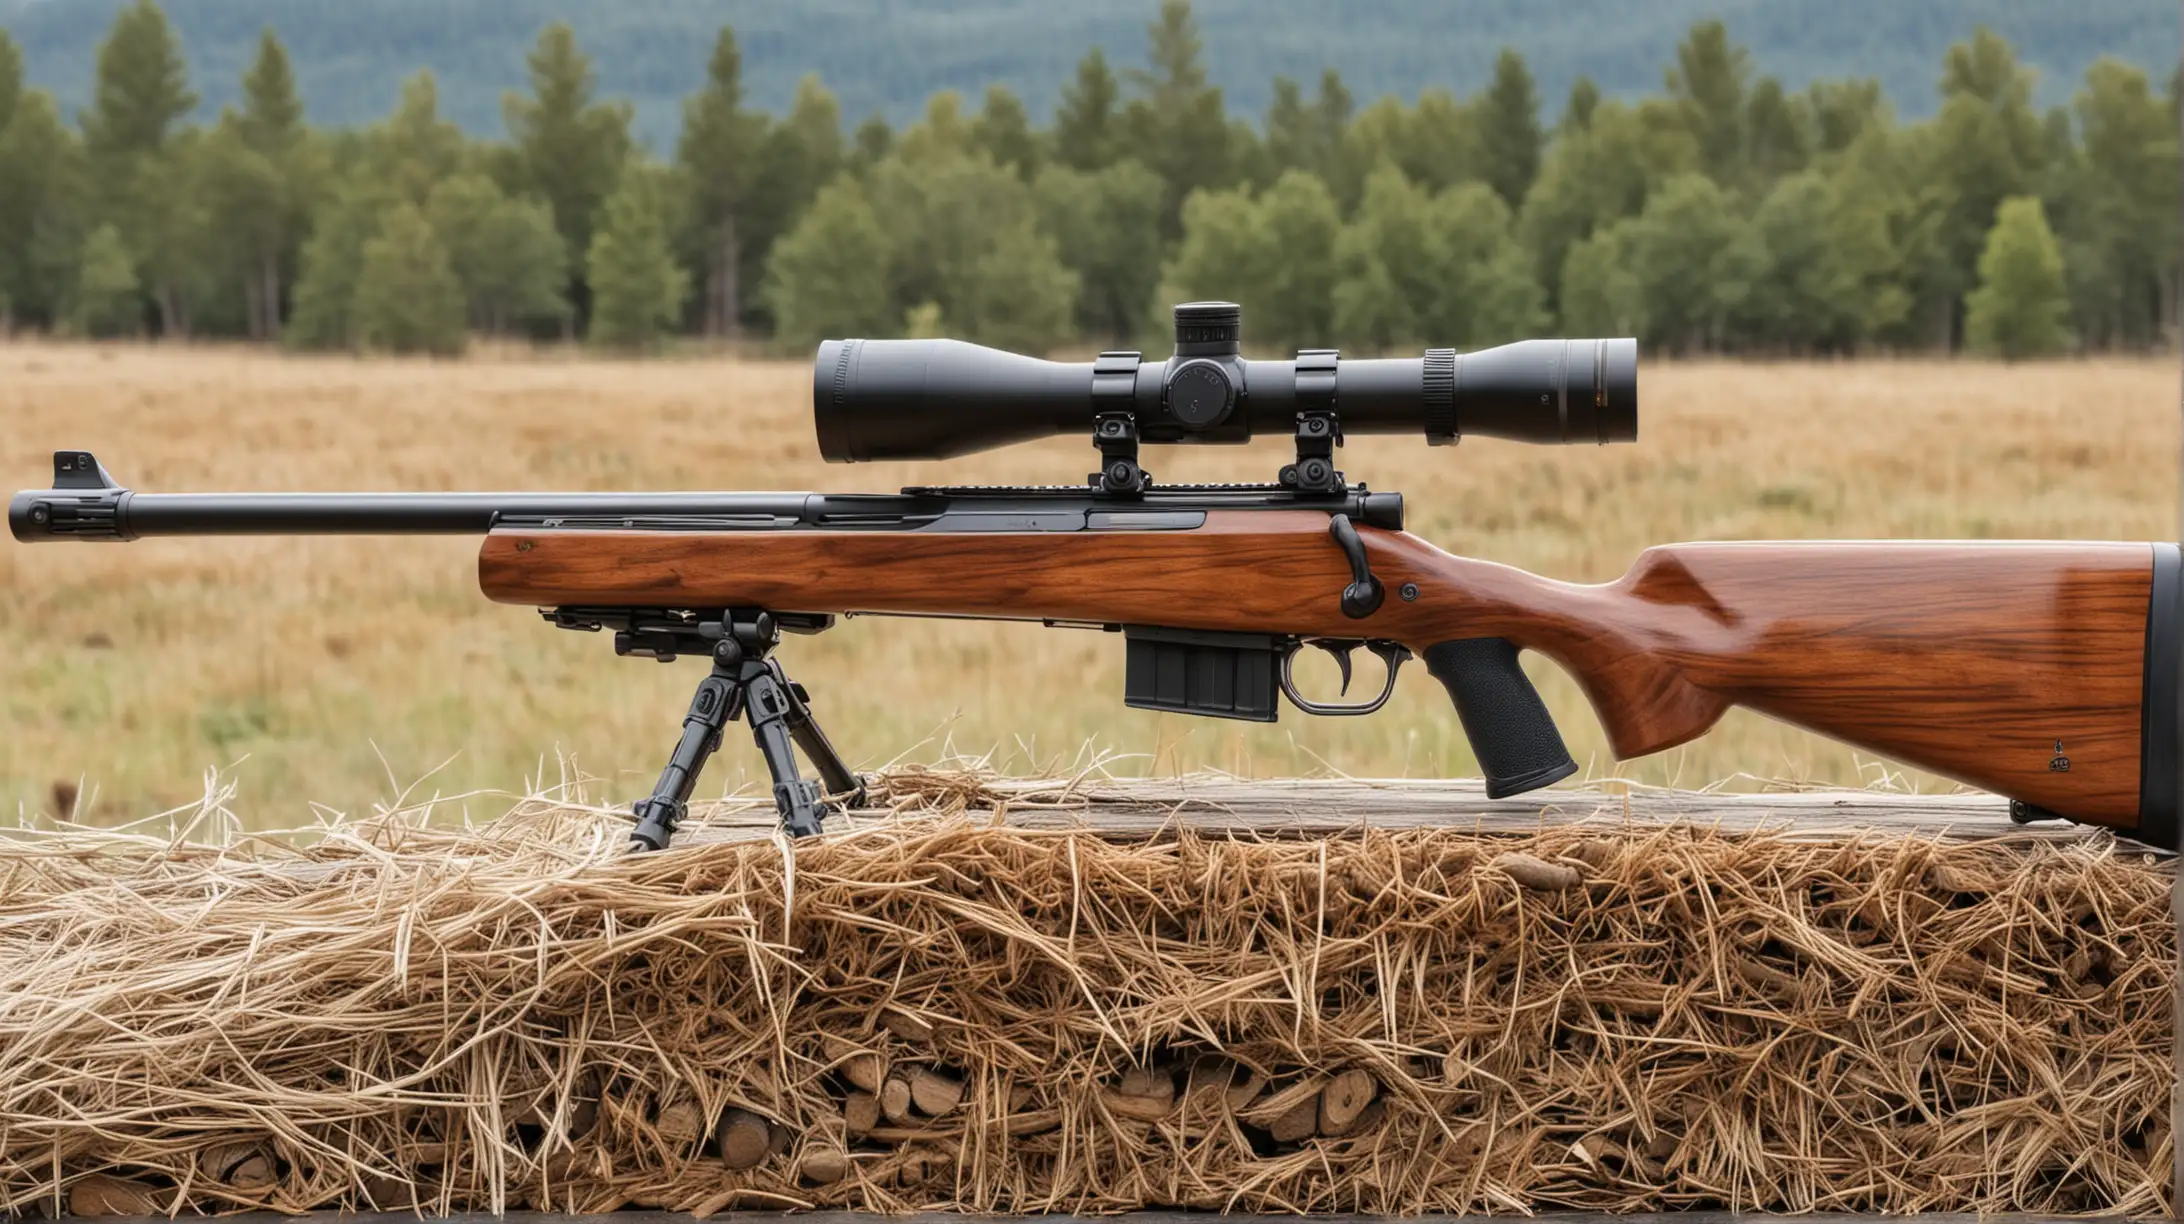 Sniper Rifle Resting on Wooden Log in Rural Landscape